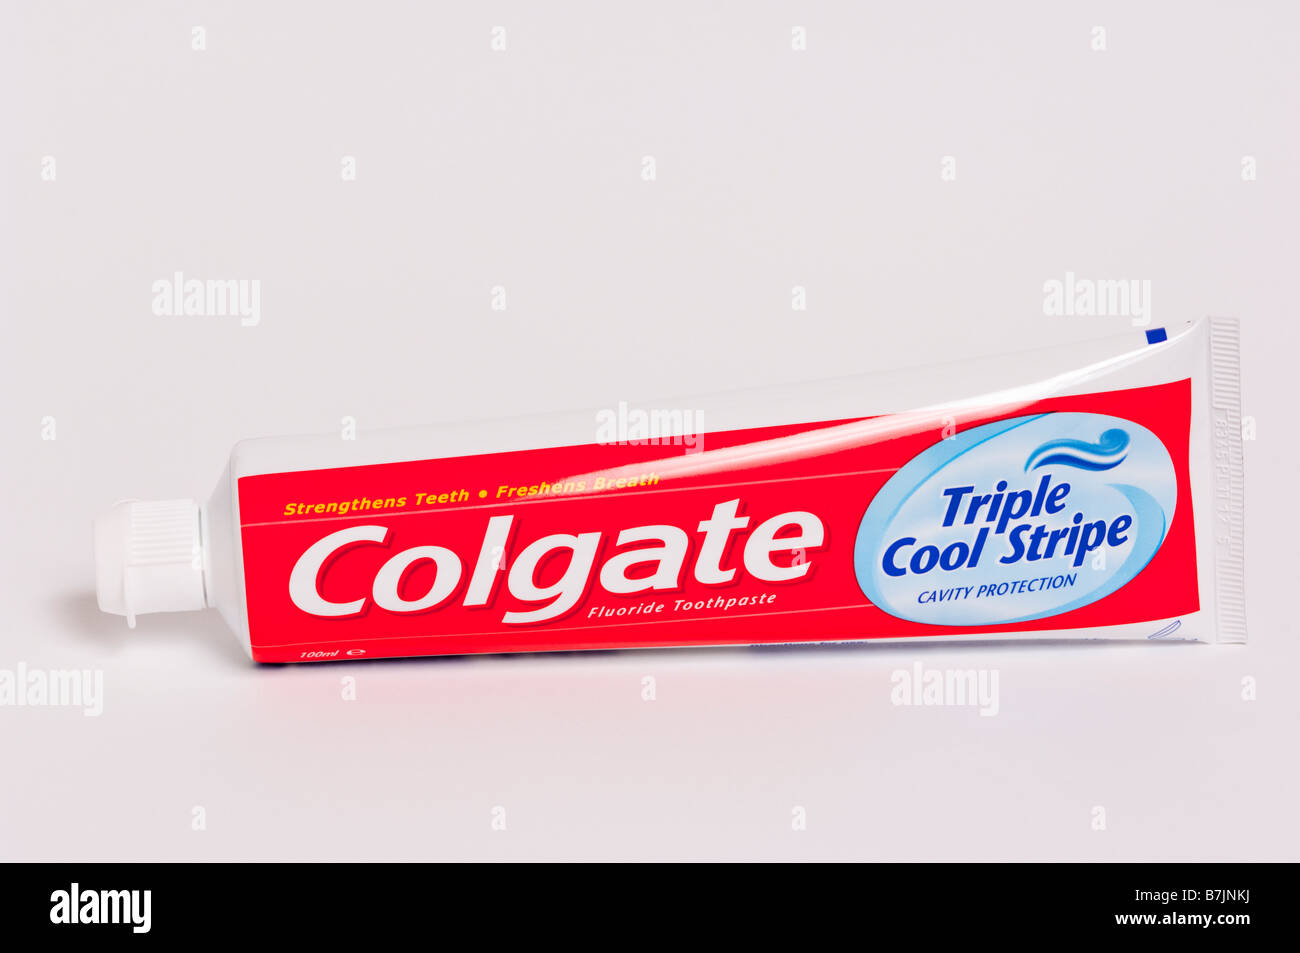 Un tube de dentifrice Colgate cavity protection triple bande cool pour le brossage des dents Dentifrice flouride tourné sur un fond blanc Banque D'Images